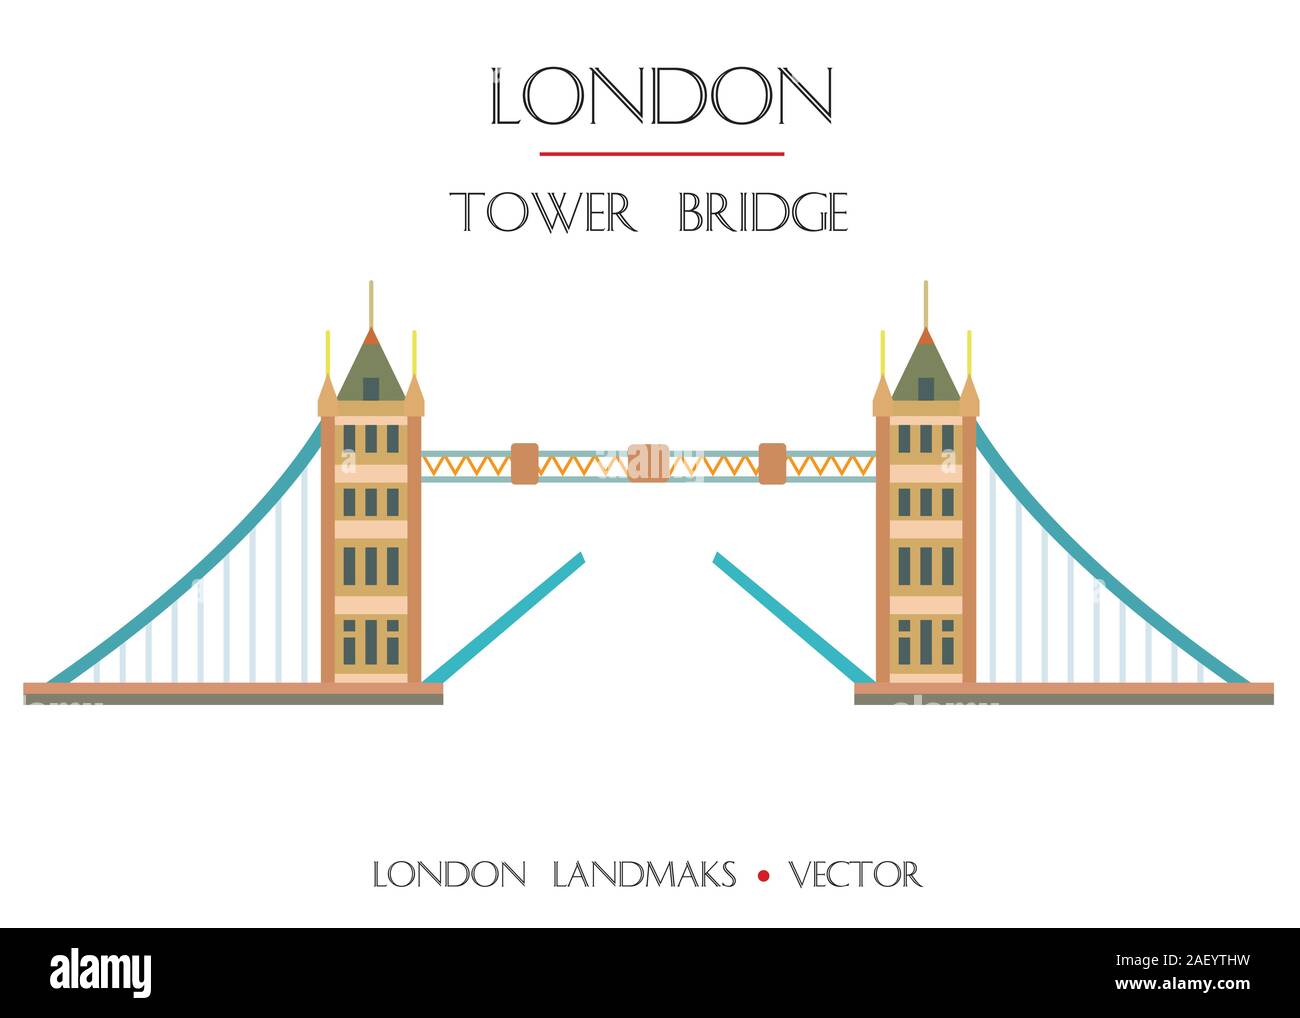 Bunte vector Tower Bridge, Wahrzeichen von London, England. Vektor flachbild Abbildung auf weißem Hintergrund. Lieferbar Abbildung: Stock Vektor